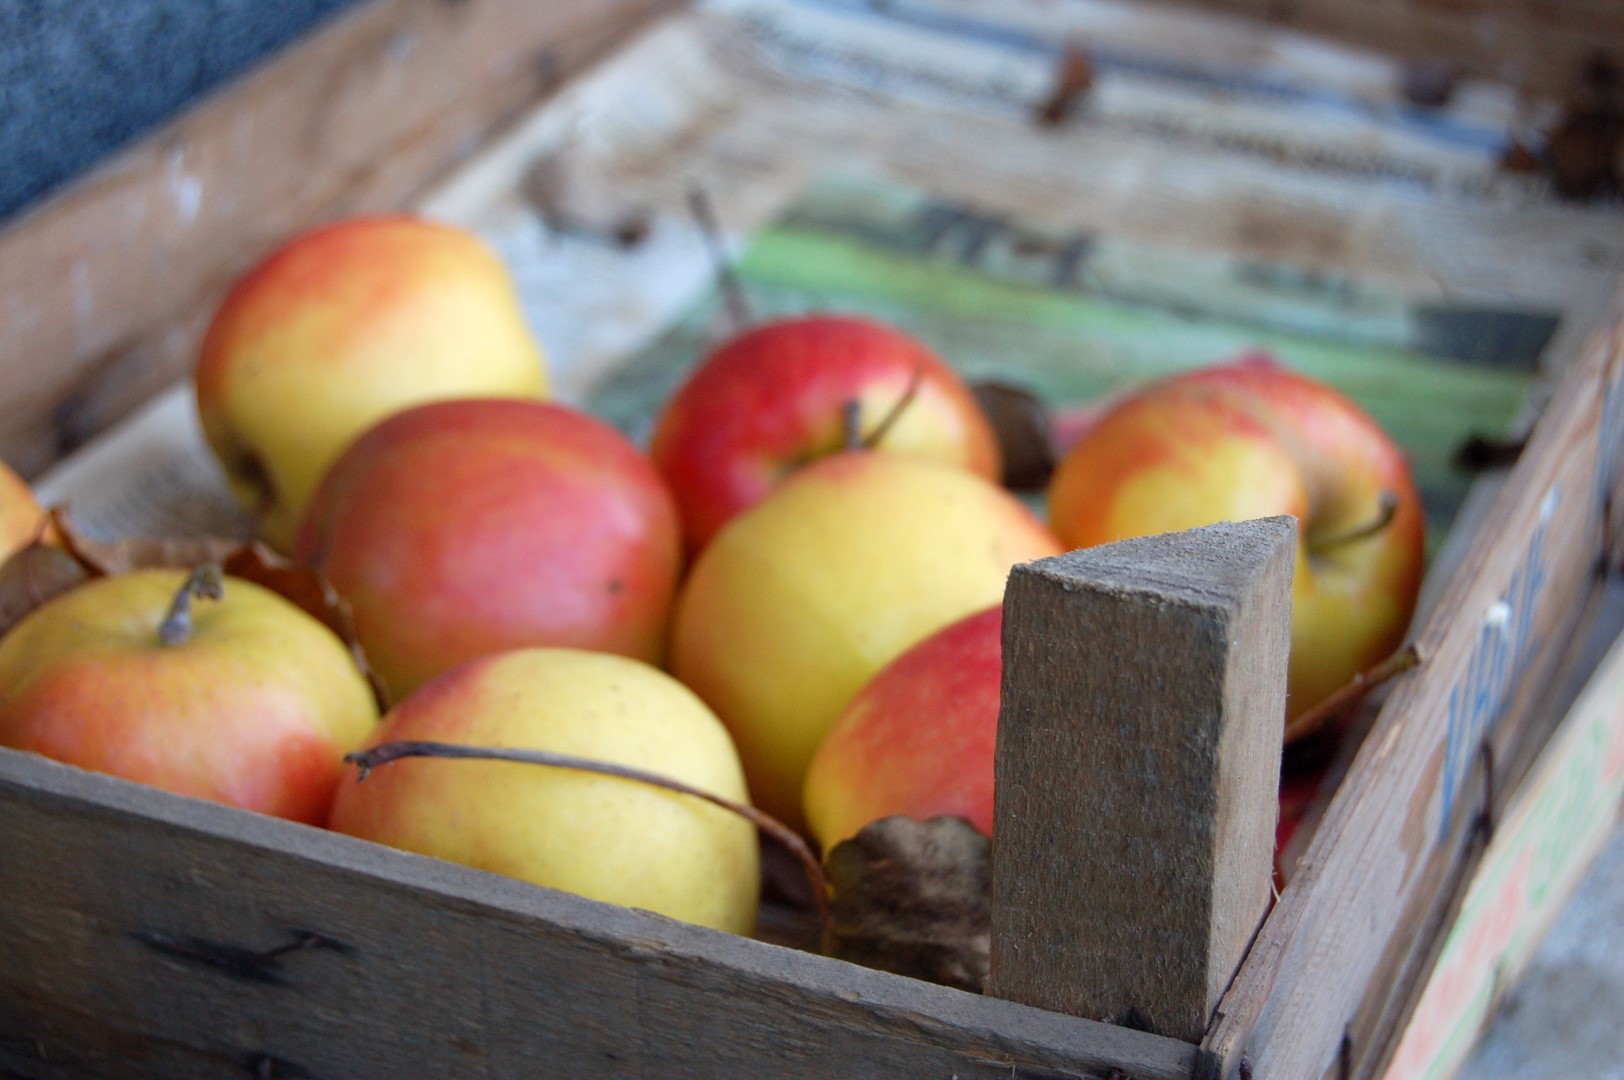 Lietuviškiems obuoliams gresia tapti prabangos preke. P. Židonio nuotr.